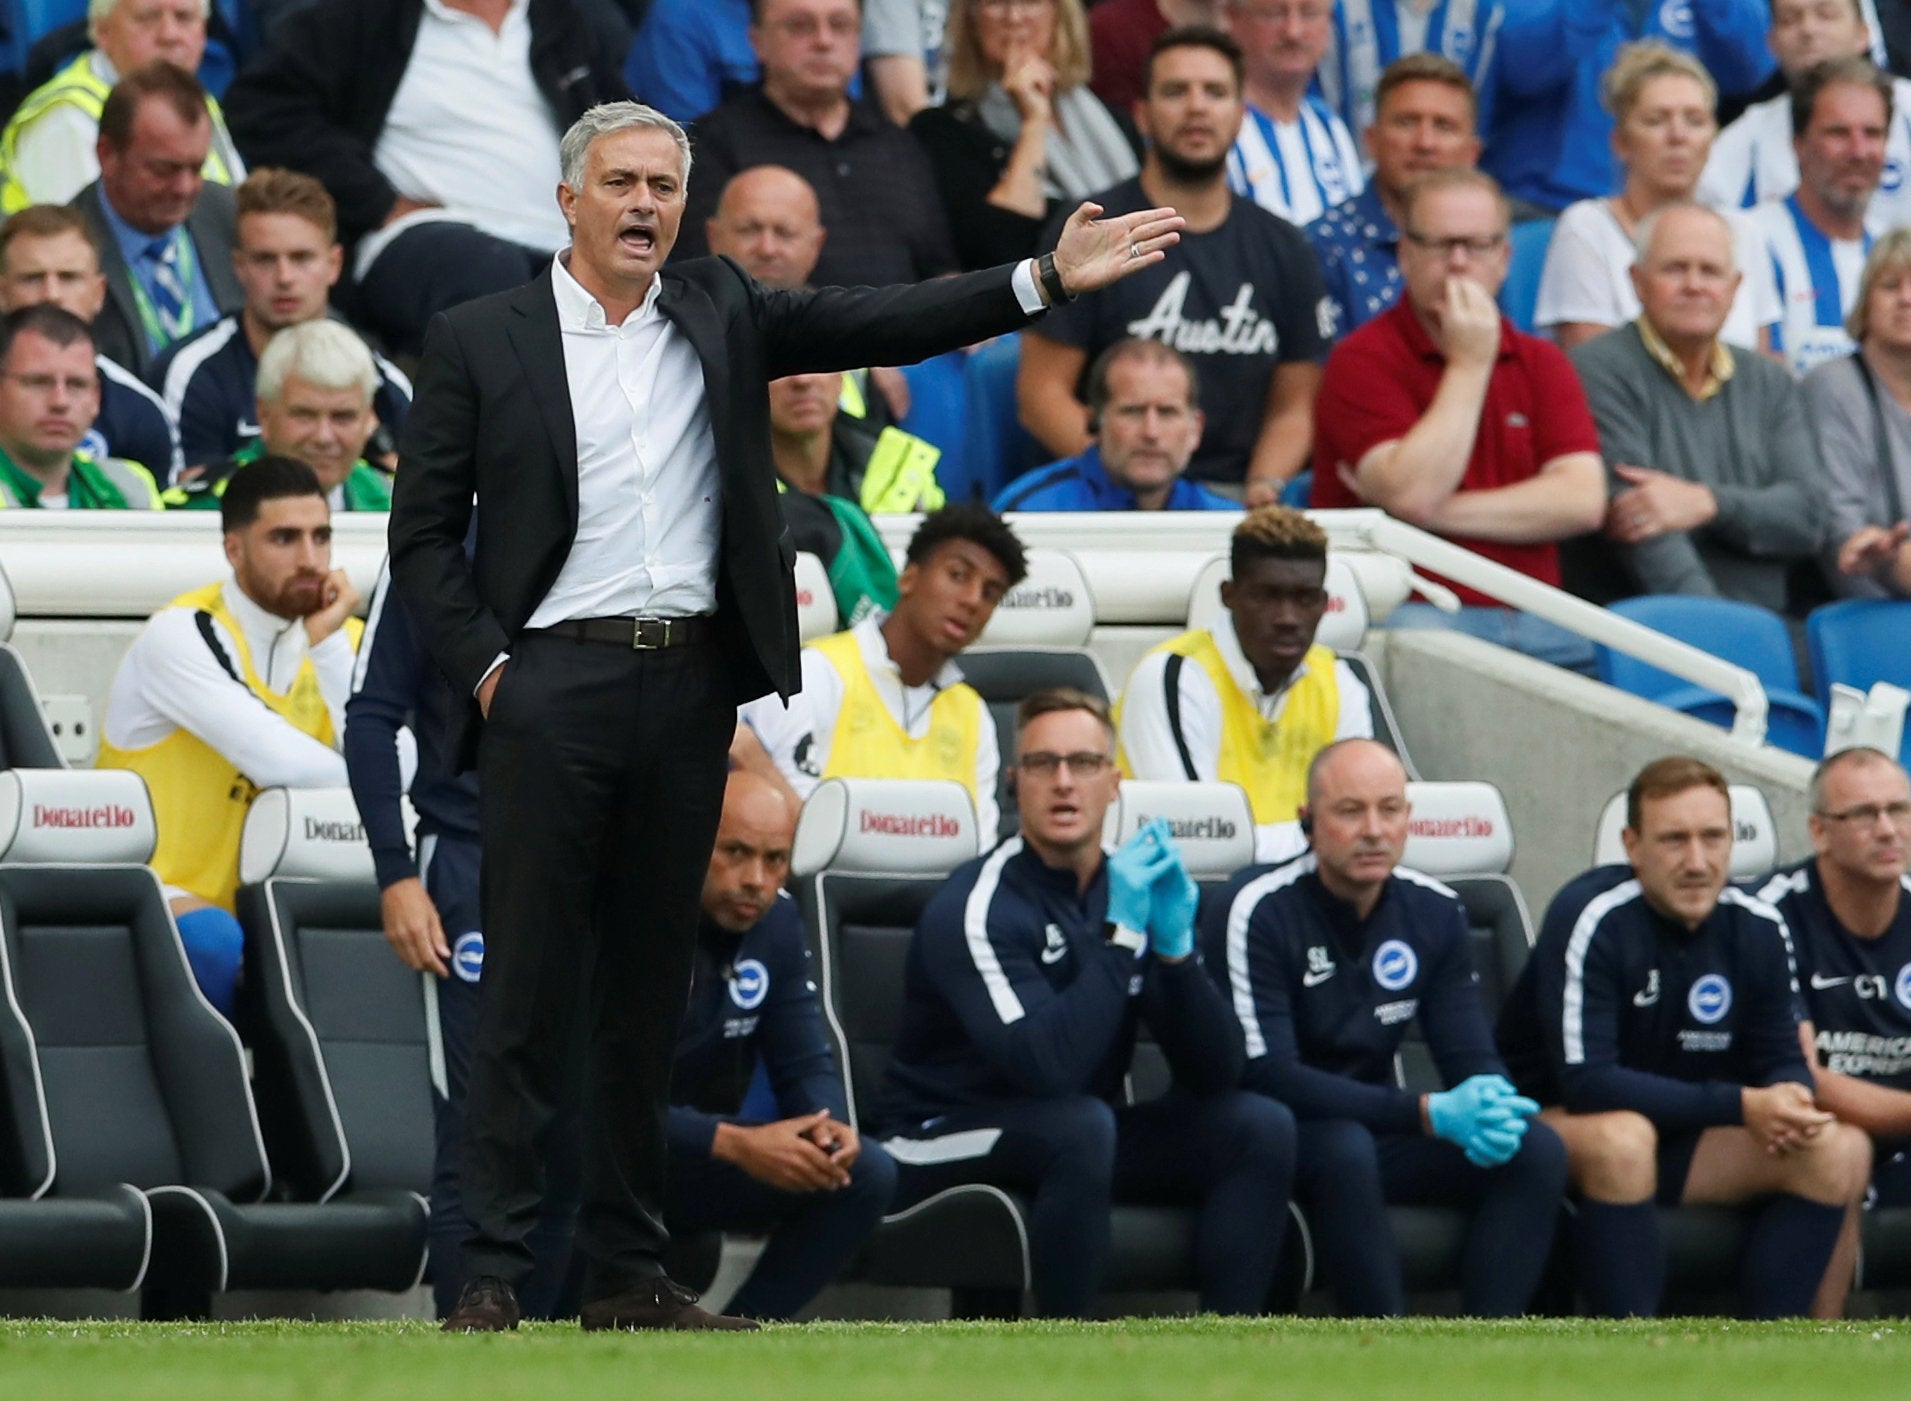 Mourinho has cut a disgruntled figure so far this season